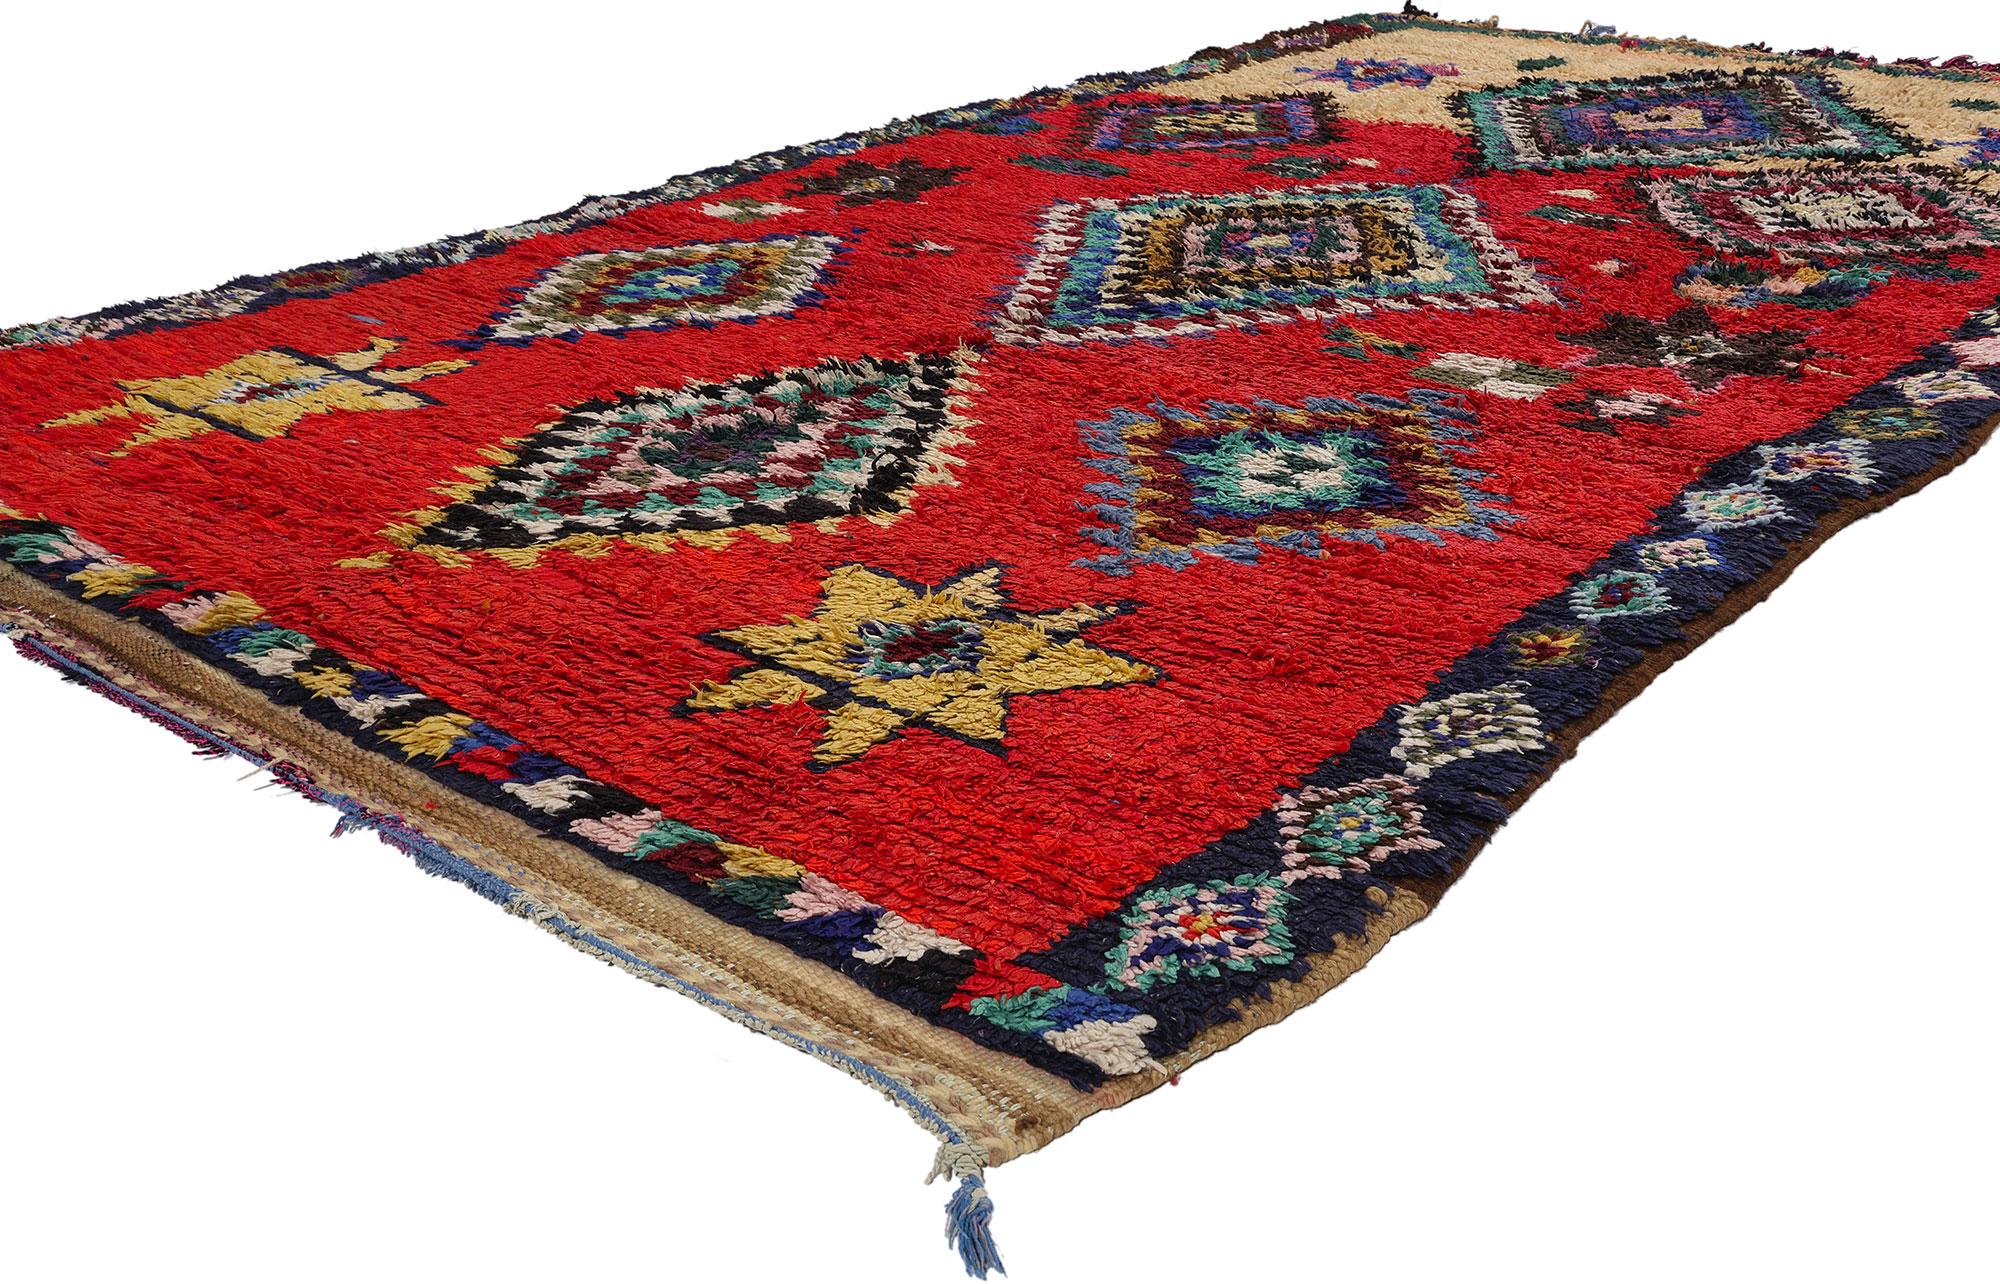 21795 Tapis marocain Boujad rouge vintage, 05'01 x 09'05. Les tapis Boujad, originaires de la région de Boujad, nichée dans le Moyen Atlas marocain, sont des trésors tissés à la main et imprégnés de tradition. Fabriqués par des tribus berbères